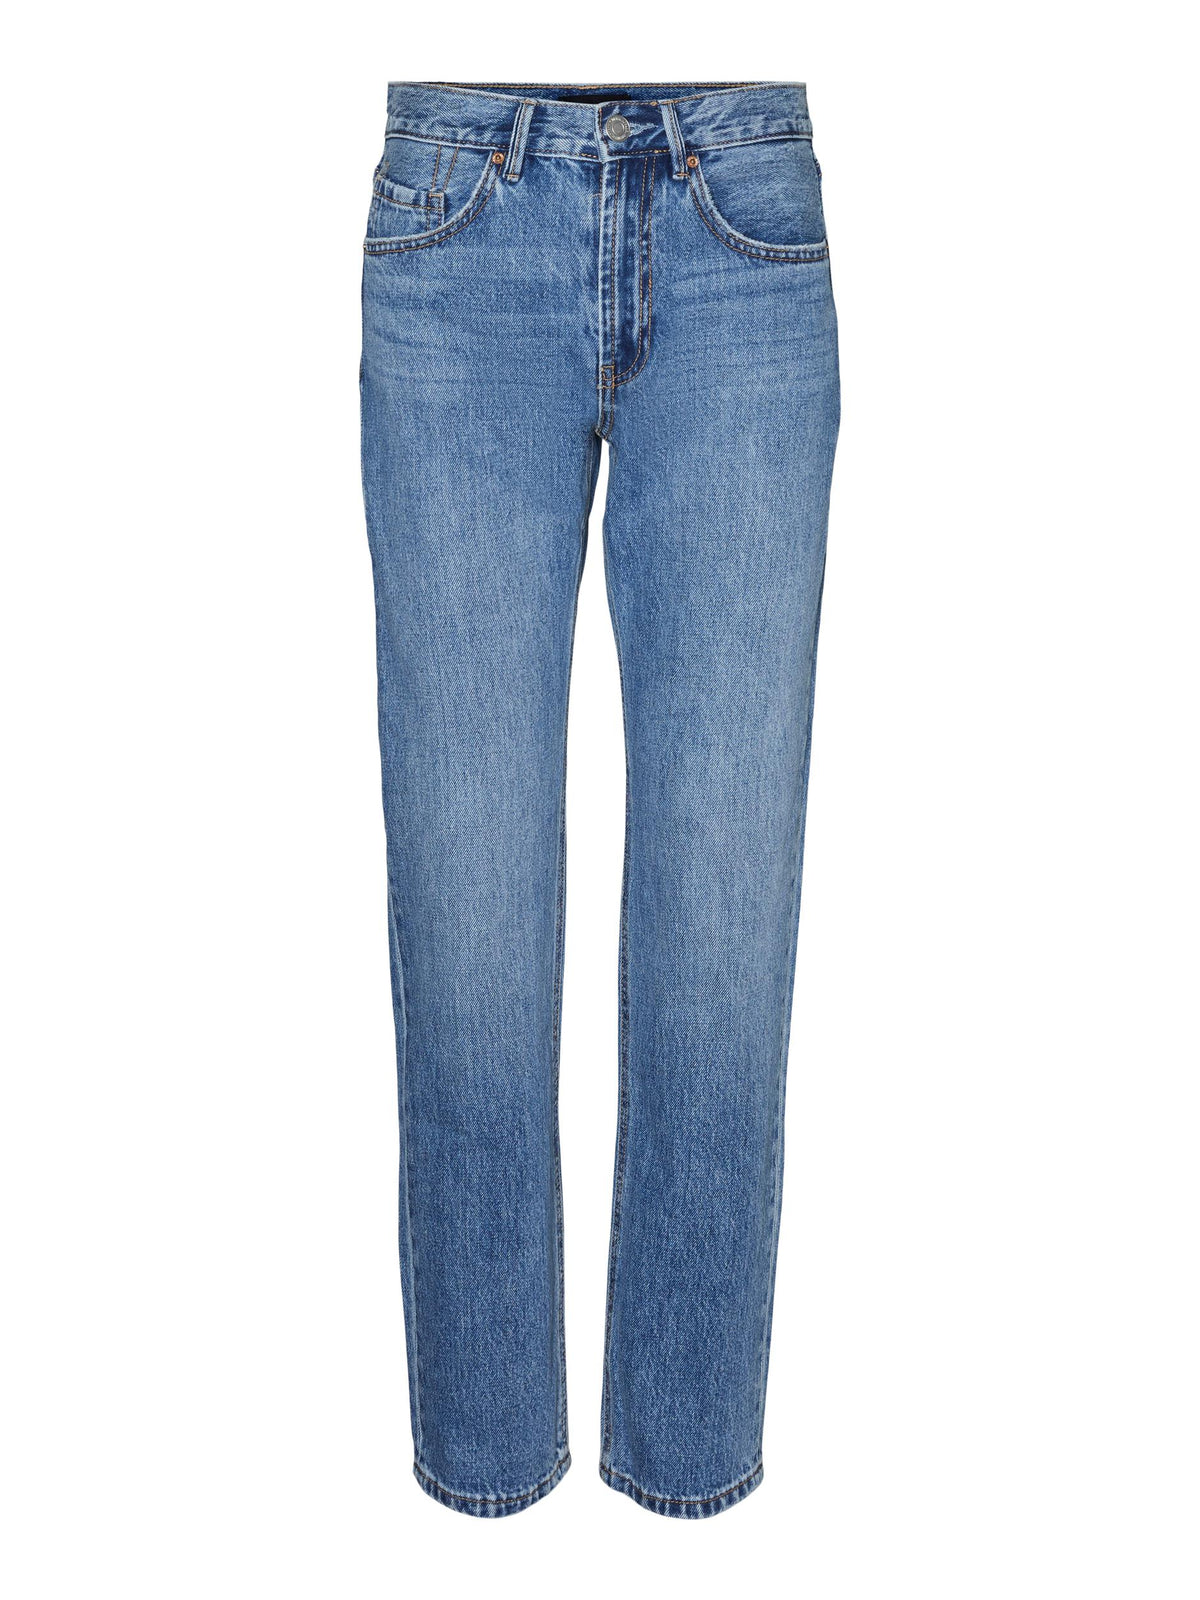 ג'ינס קלאסי בגזרה ישרה /אורך ארוך במיוחד